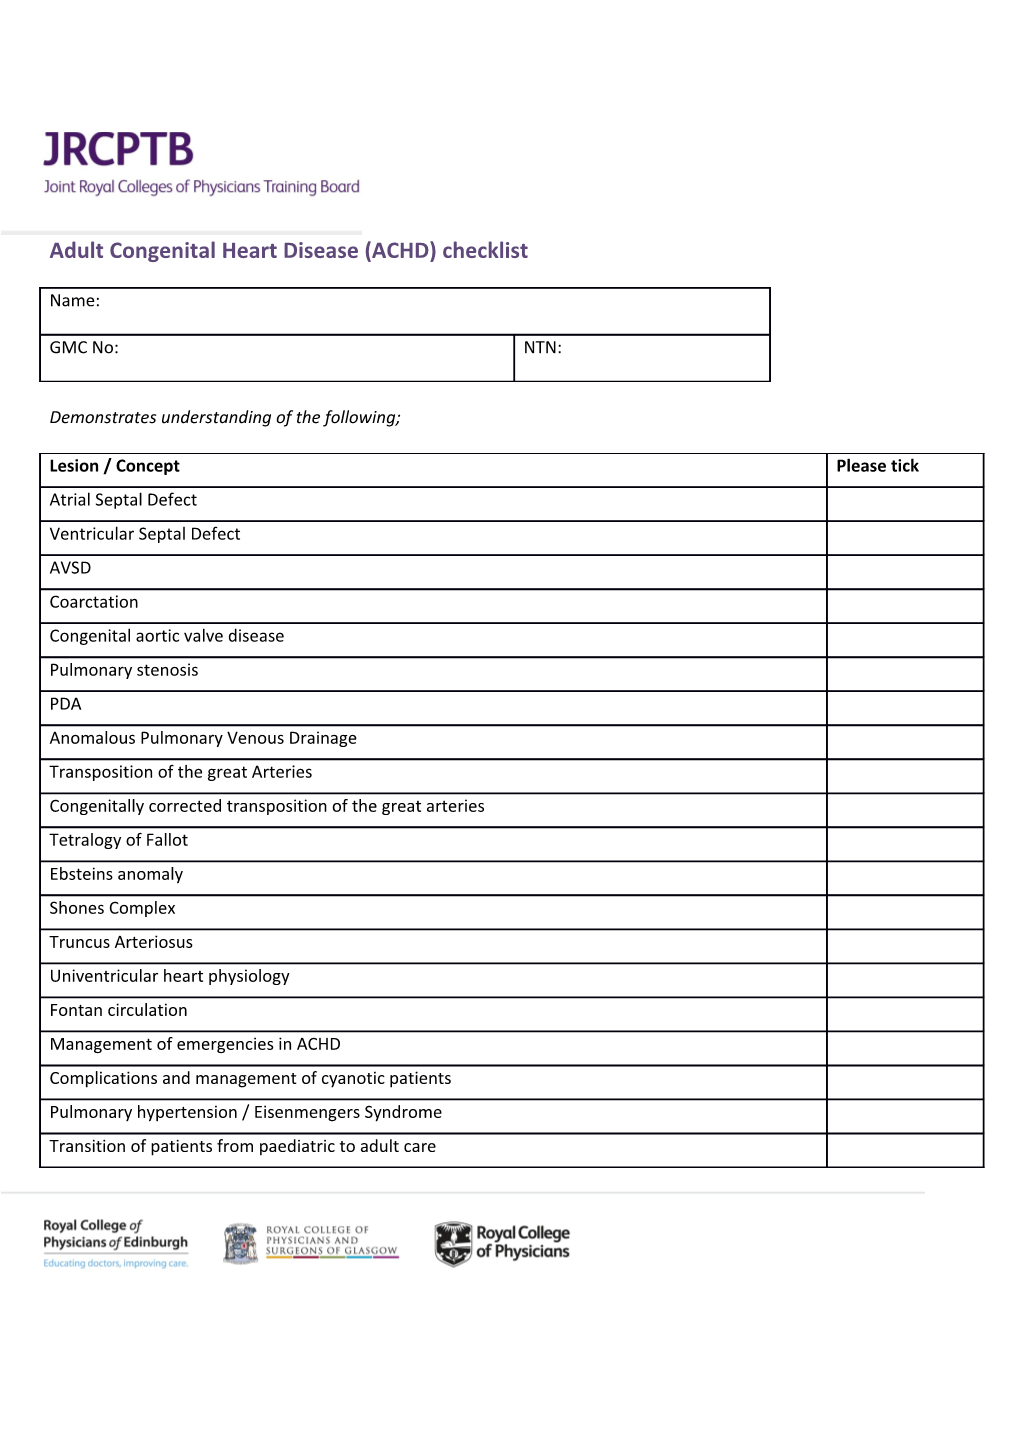 Adult Congenital Heart Disease (ACHD) Checklist